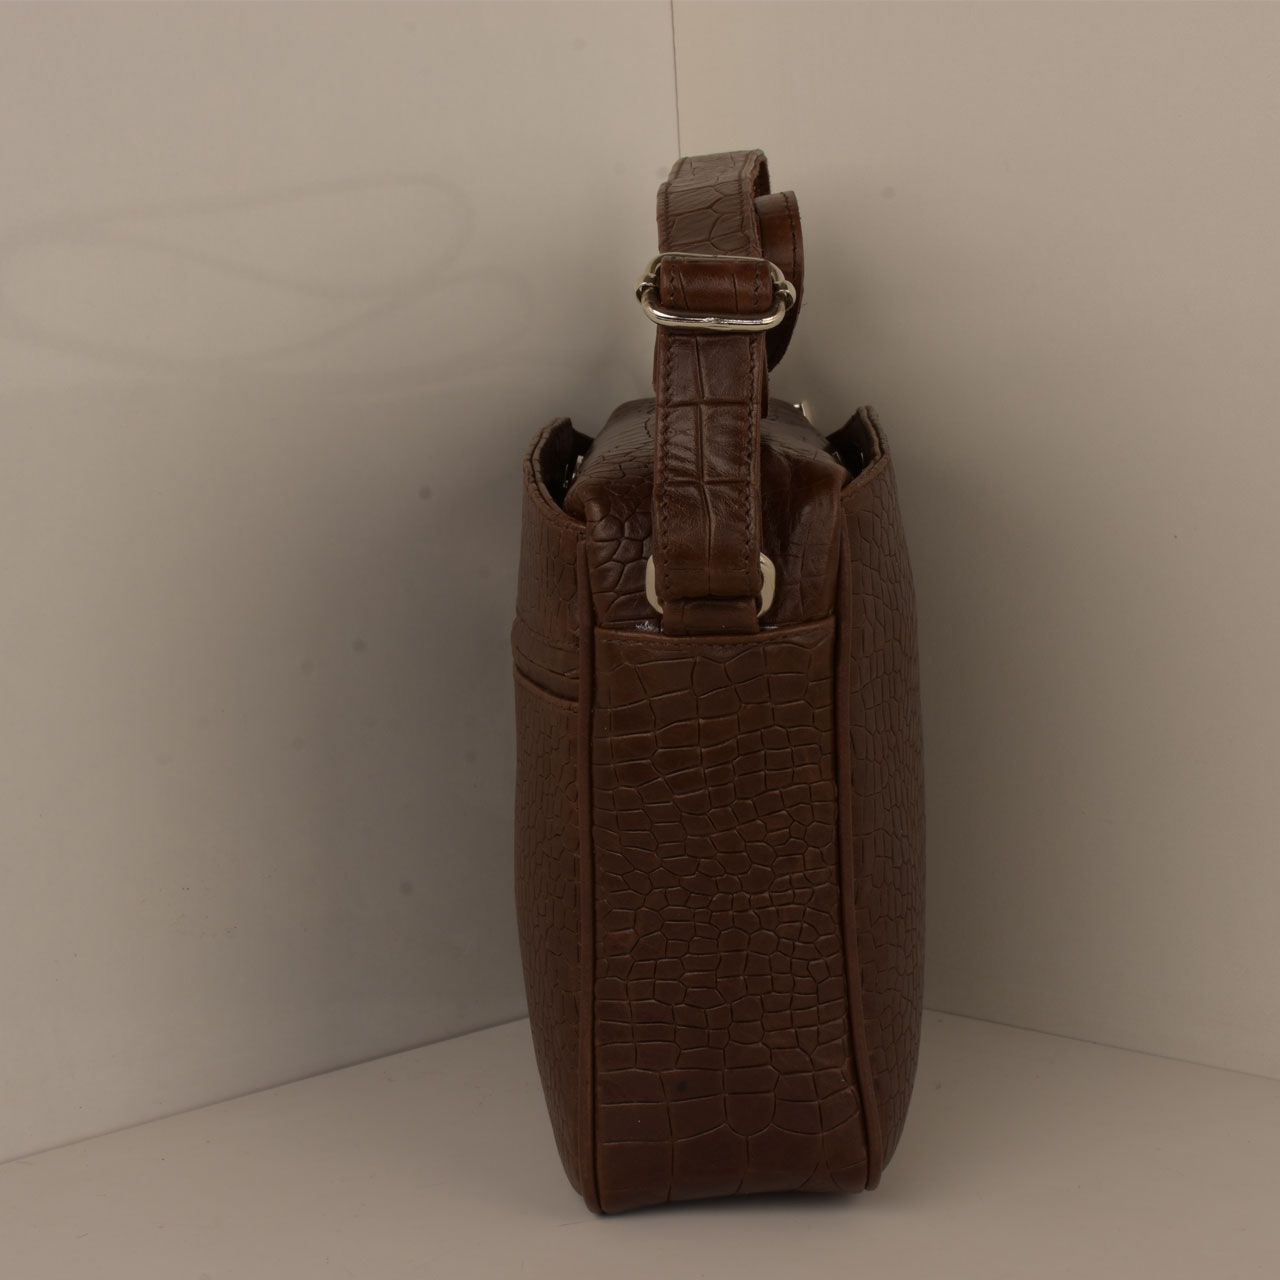  کیف دوشی زنانه پارینه چرم مدل V201-7 -  - 4